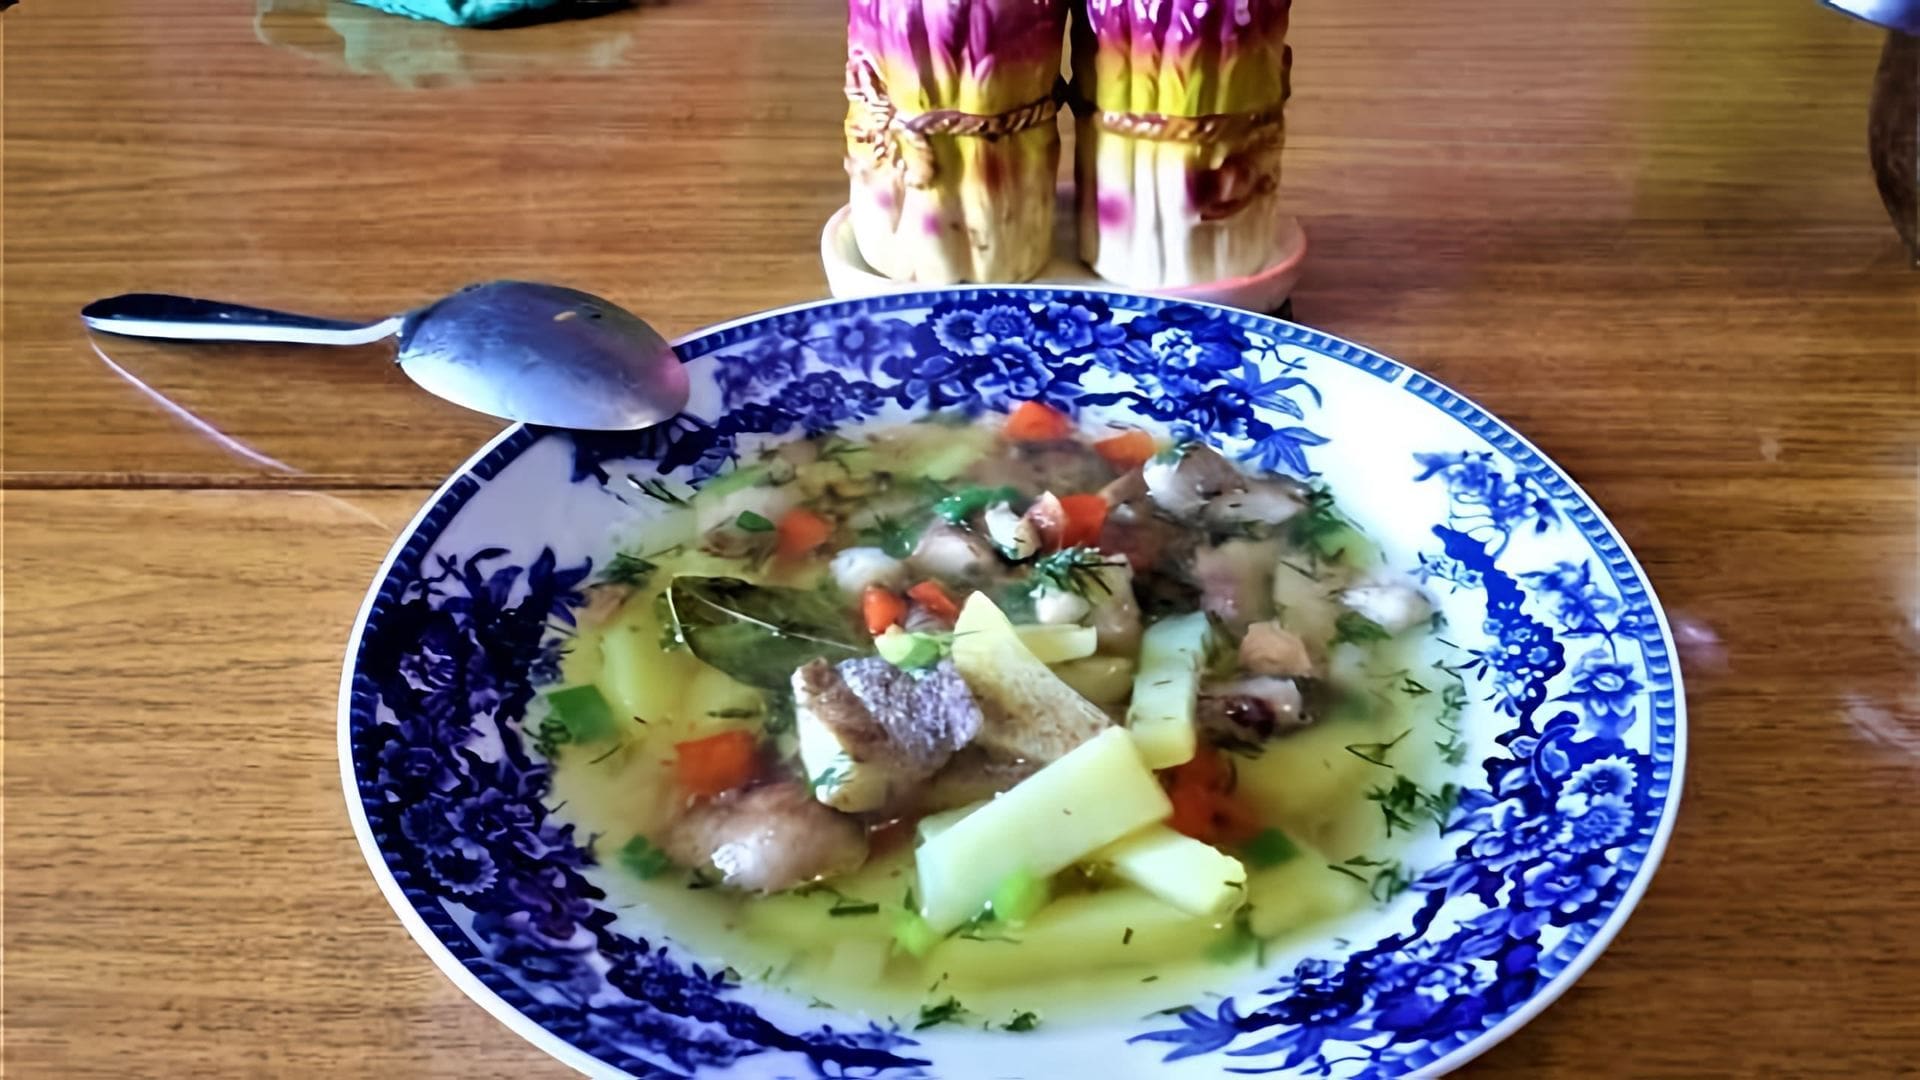 В этом видео демонстрируется процесс приготовления супа из соленых груздей, который называется грузинкой